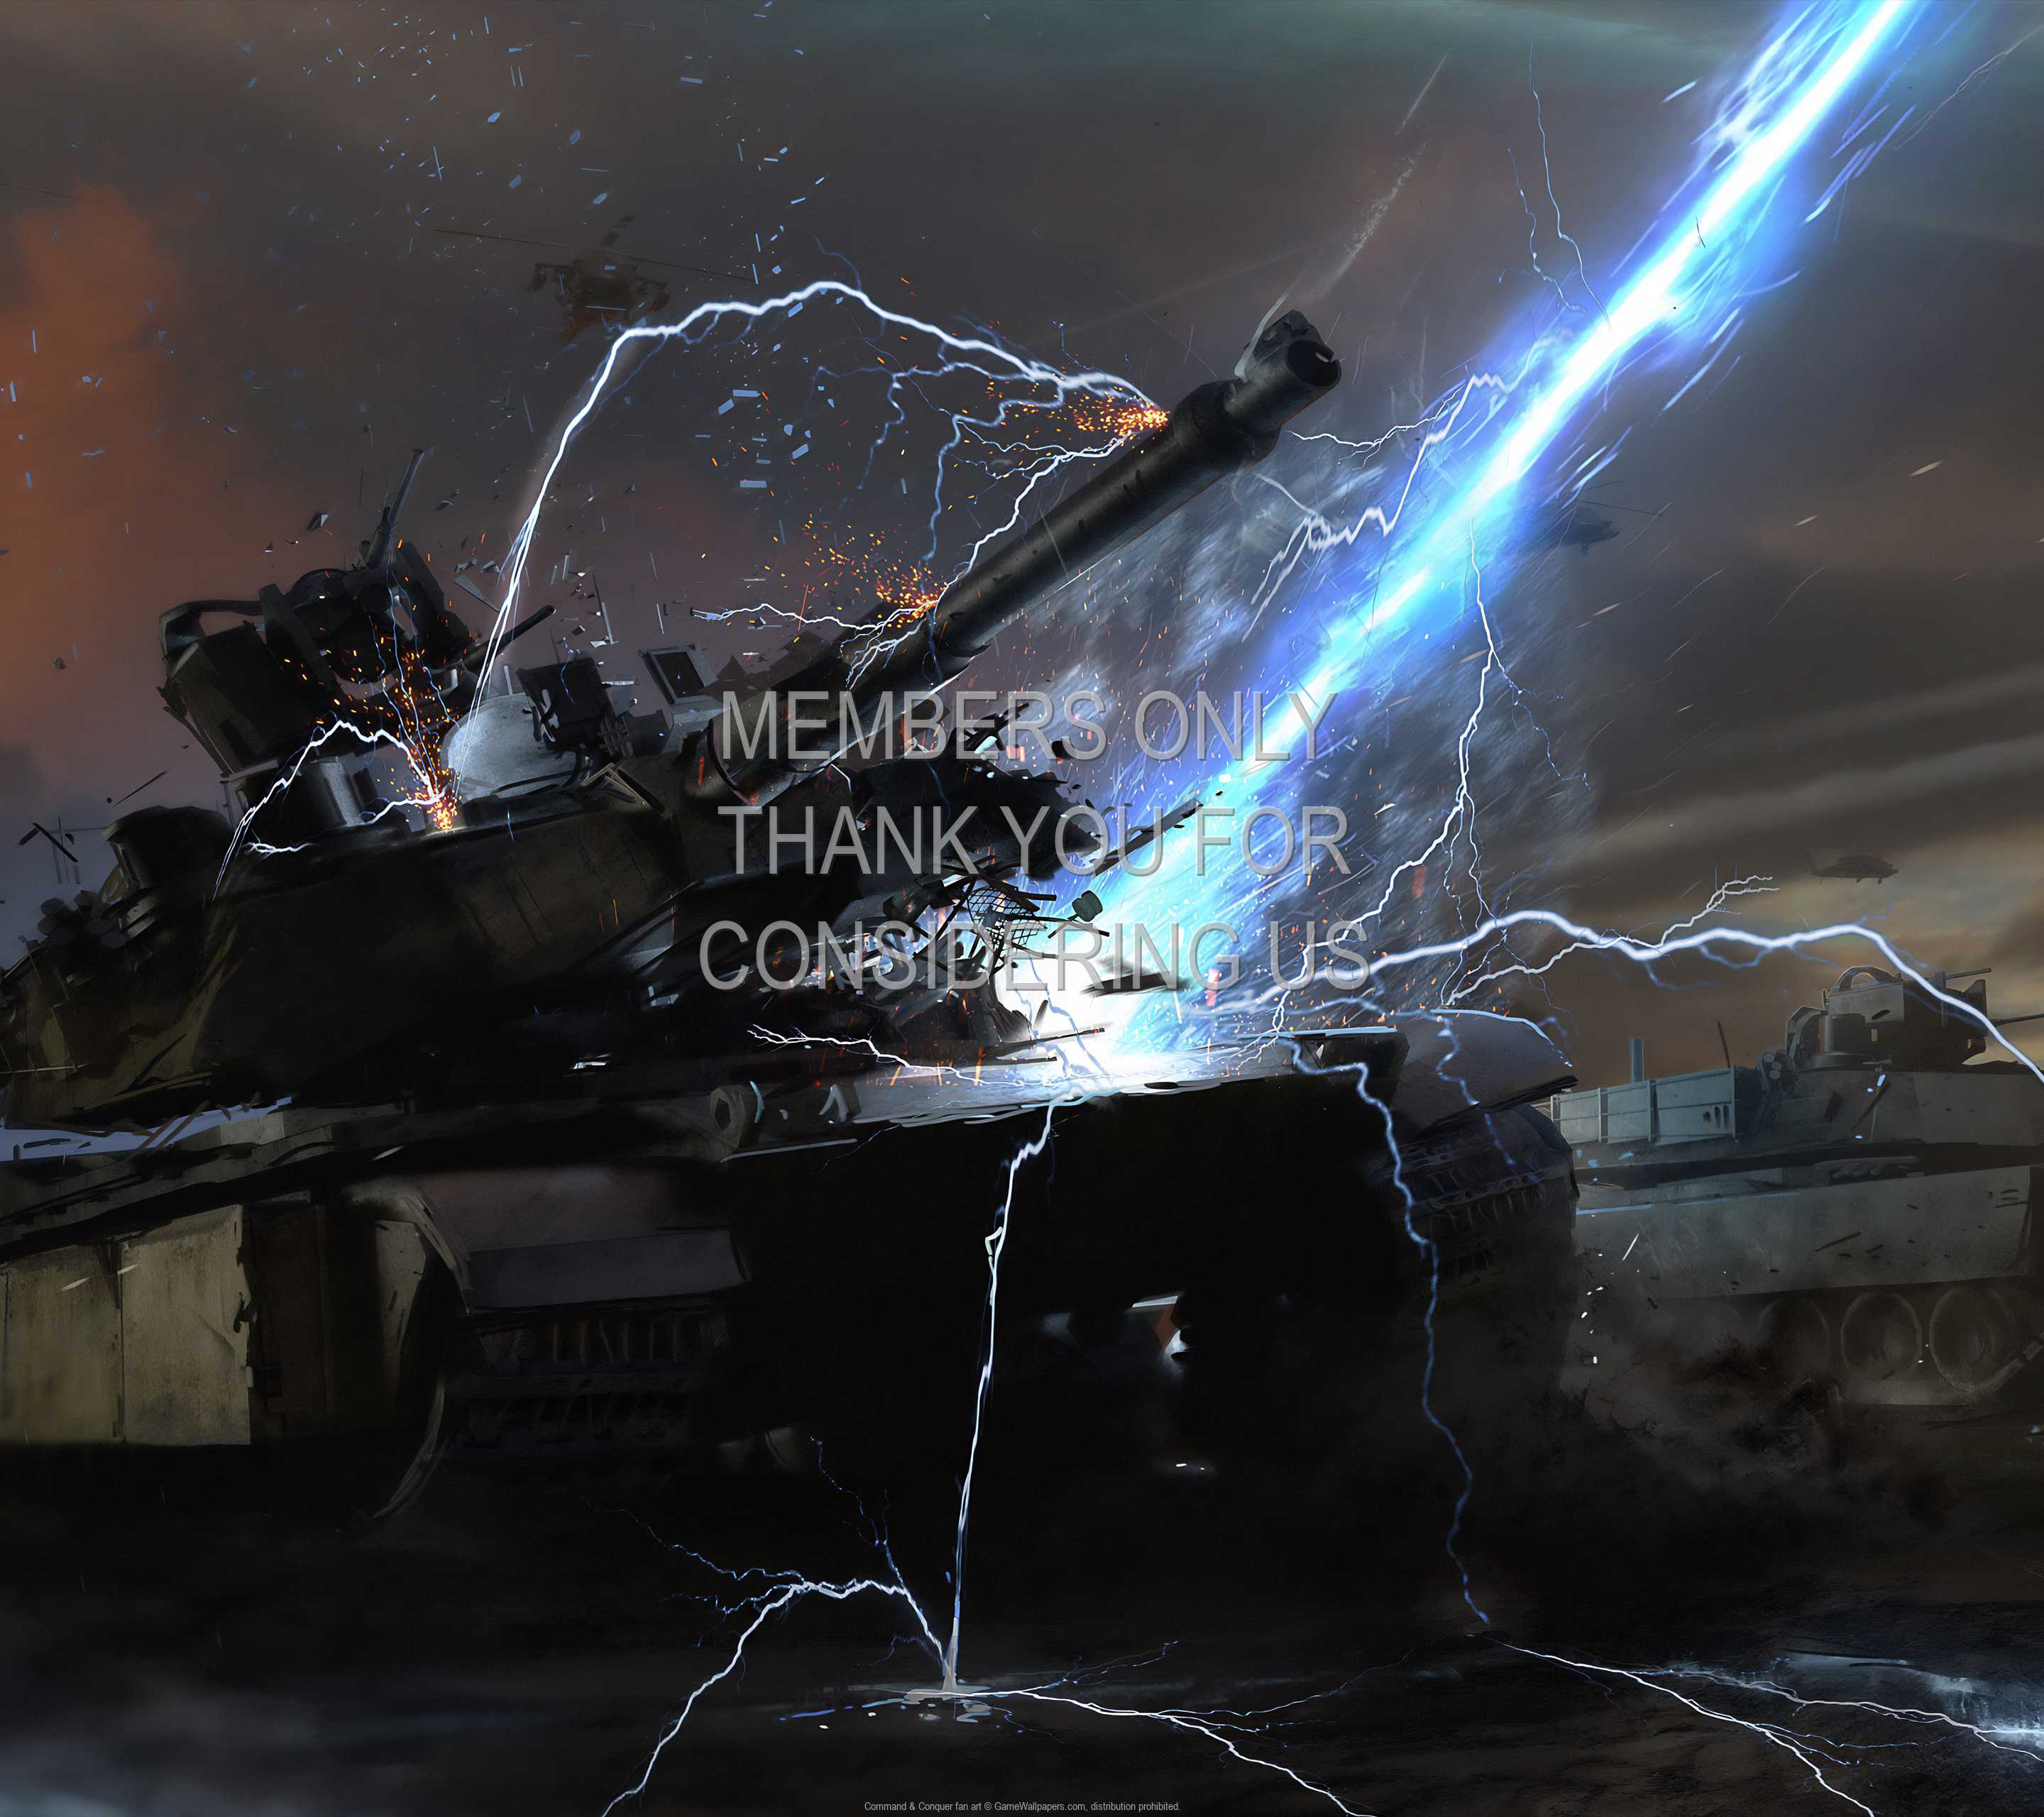 Command & Conquer fan art 1440p Horizontal Mobiele achtergrond 01